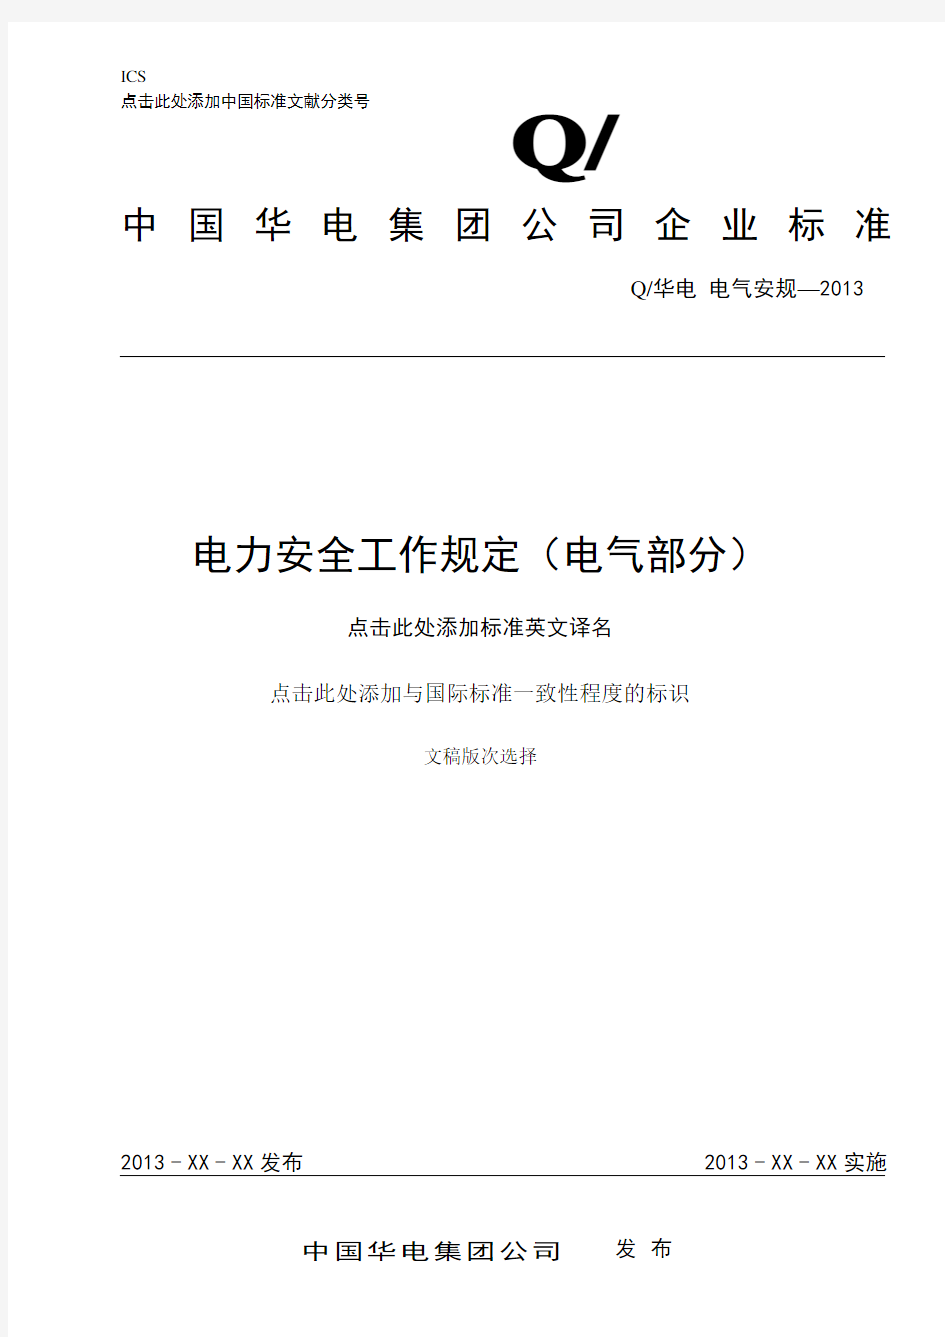 中国华电集团《电力安全工作规程》(电气部分)2013